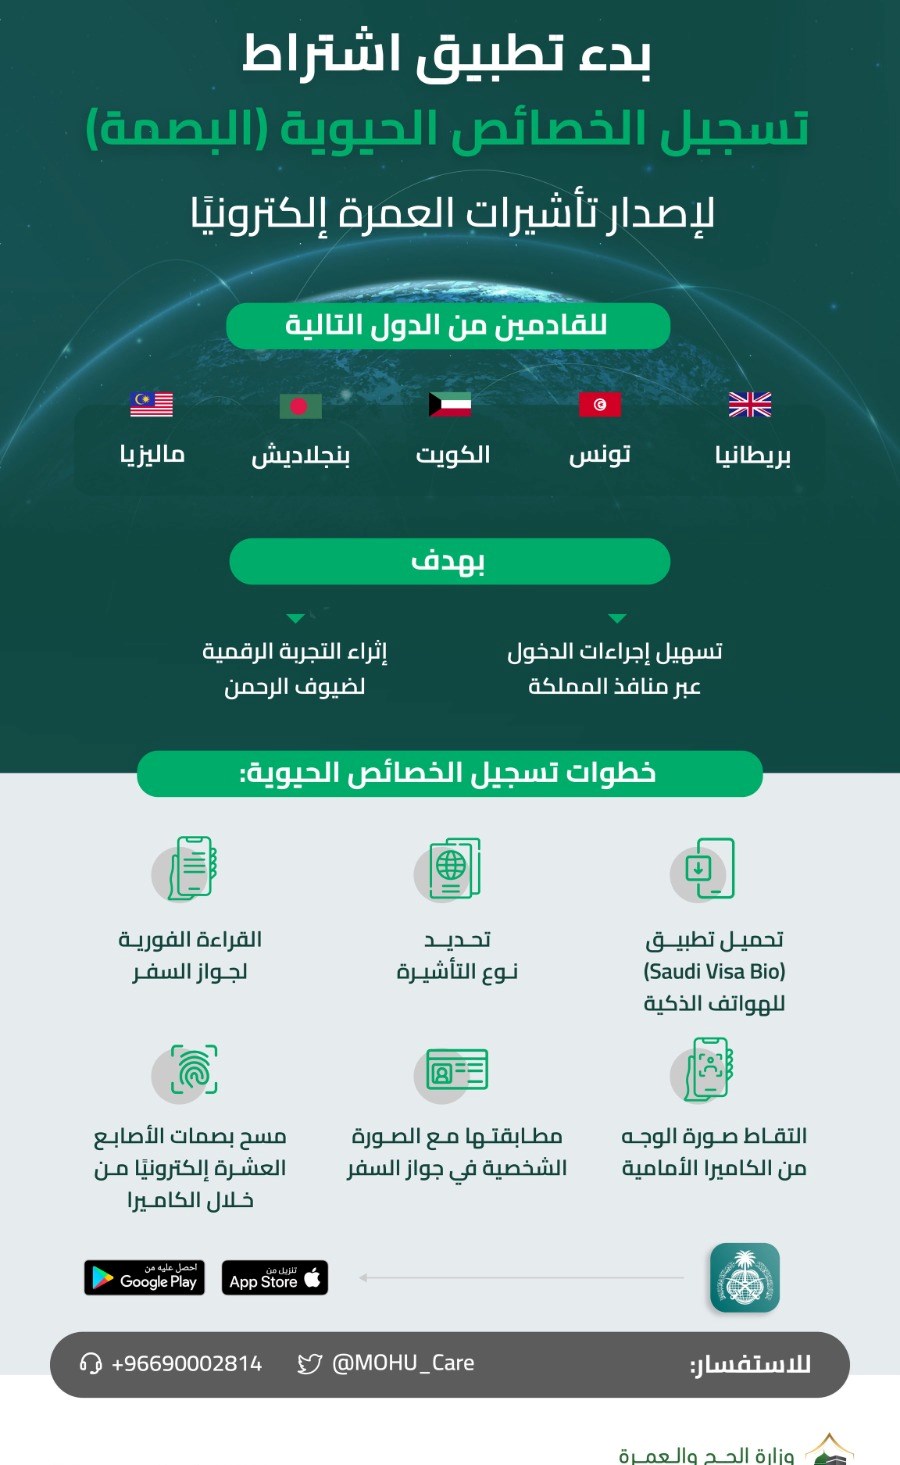 وزارة الحج بدء اشتراط تسجيل البصمة لإصدار تأشيرة العمرة للقادمين الكويت و4 دول